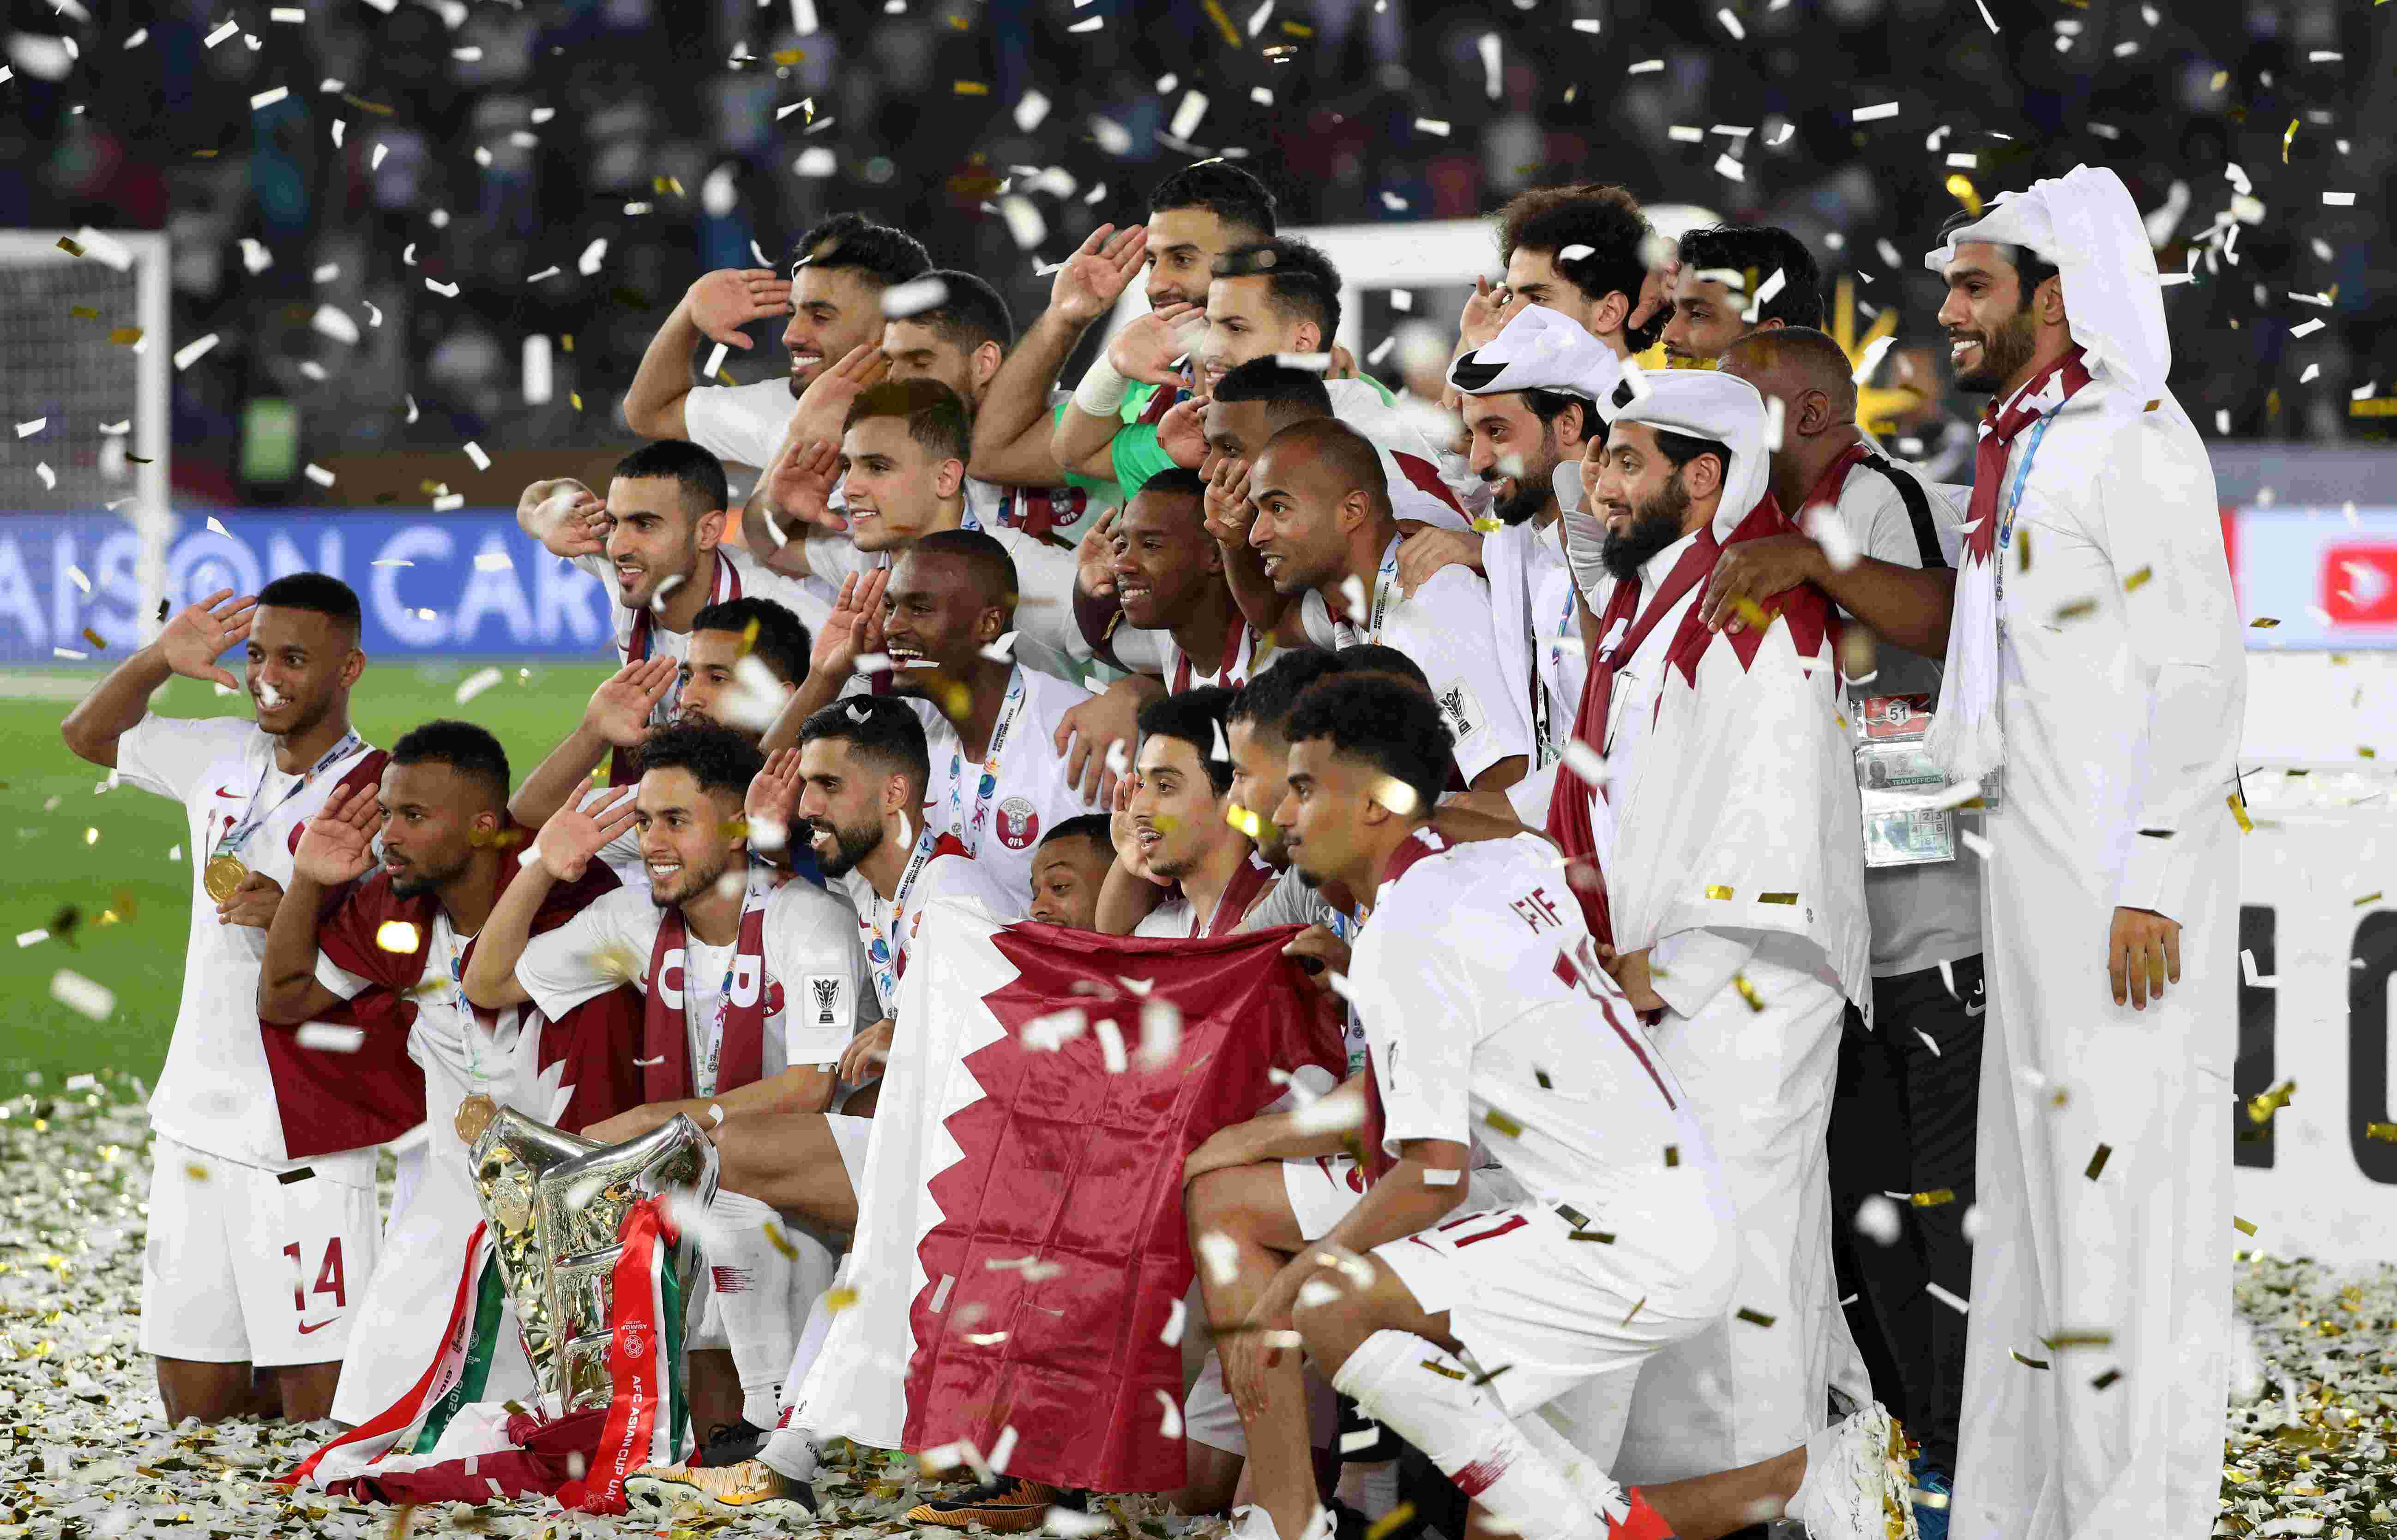 卡塔尔球队,卡塔尔世界杯,阵容,球迷,主力球员